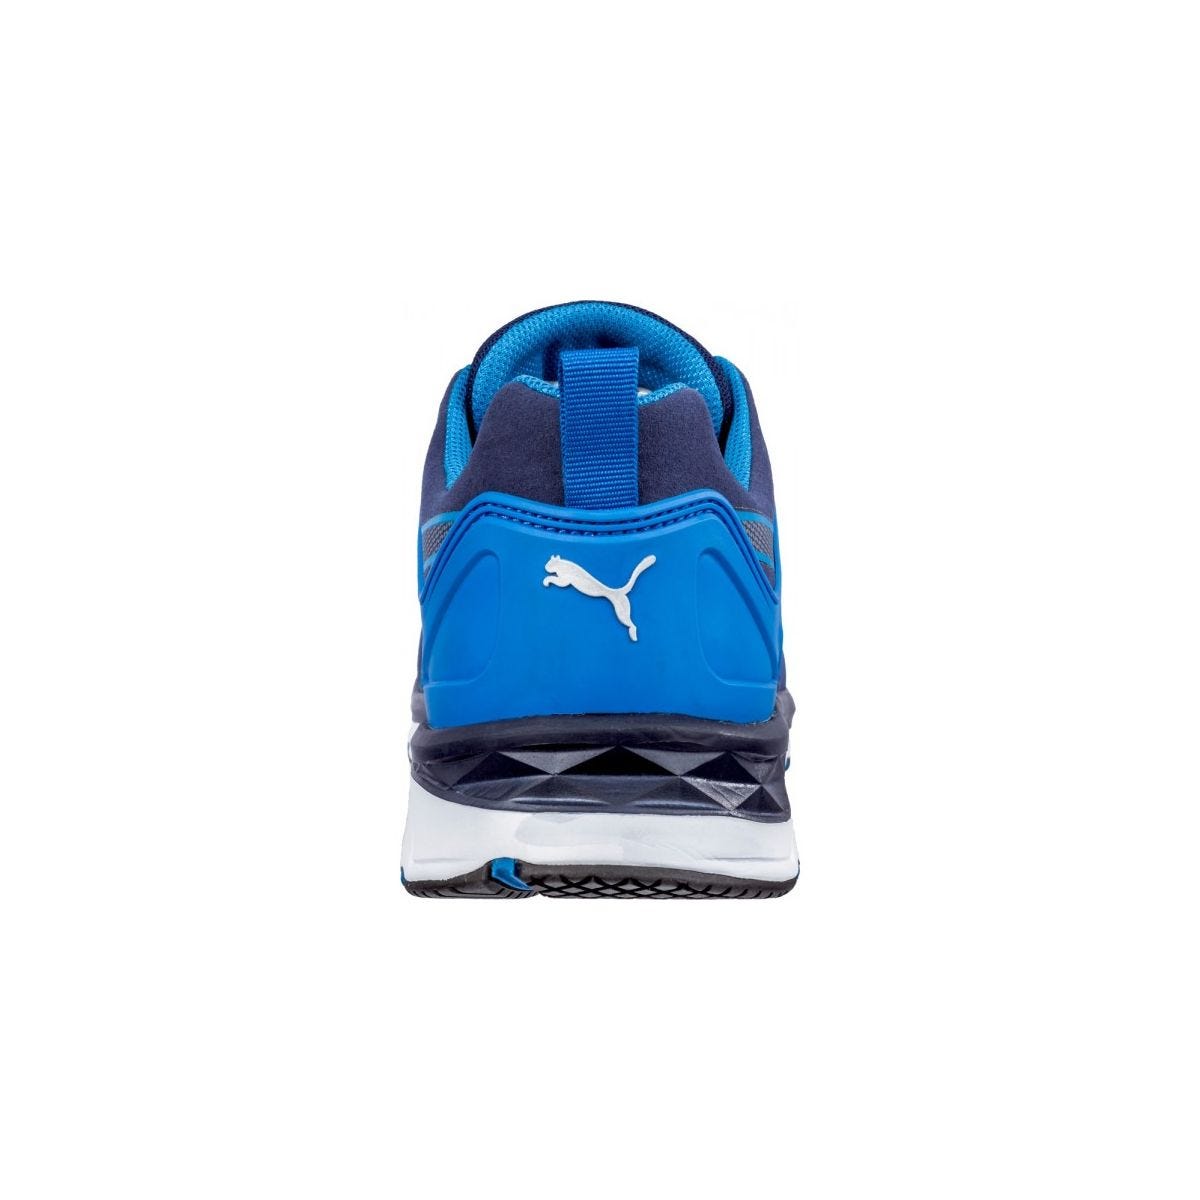 Chaussures de sécurité Velocity 2.0 Bleu Low S1P - Puma - Taille 40 1